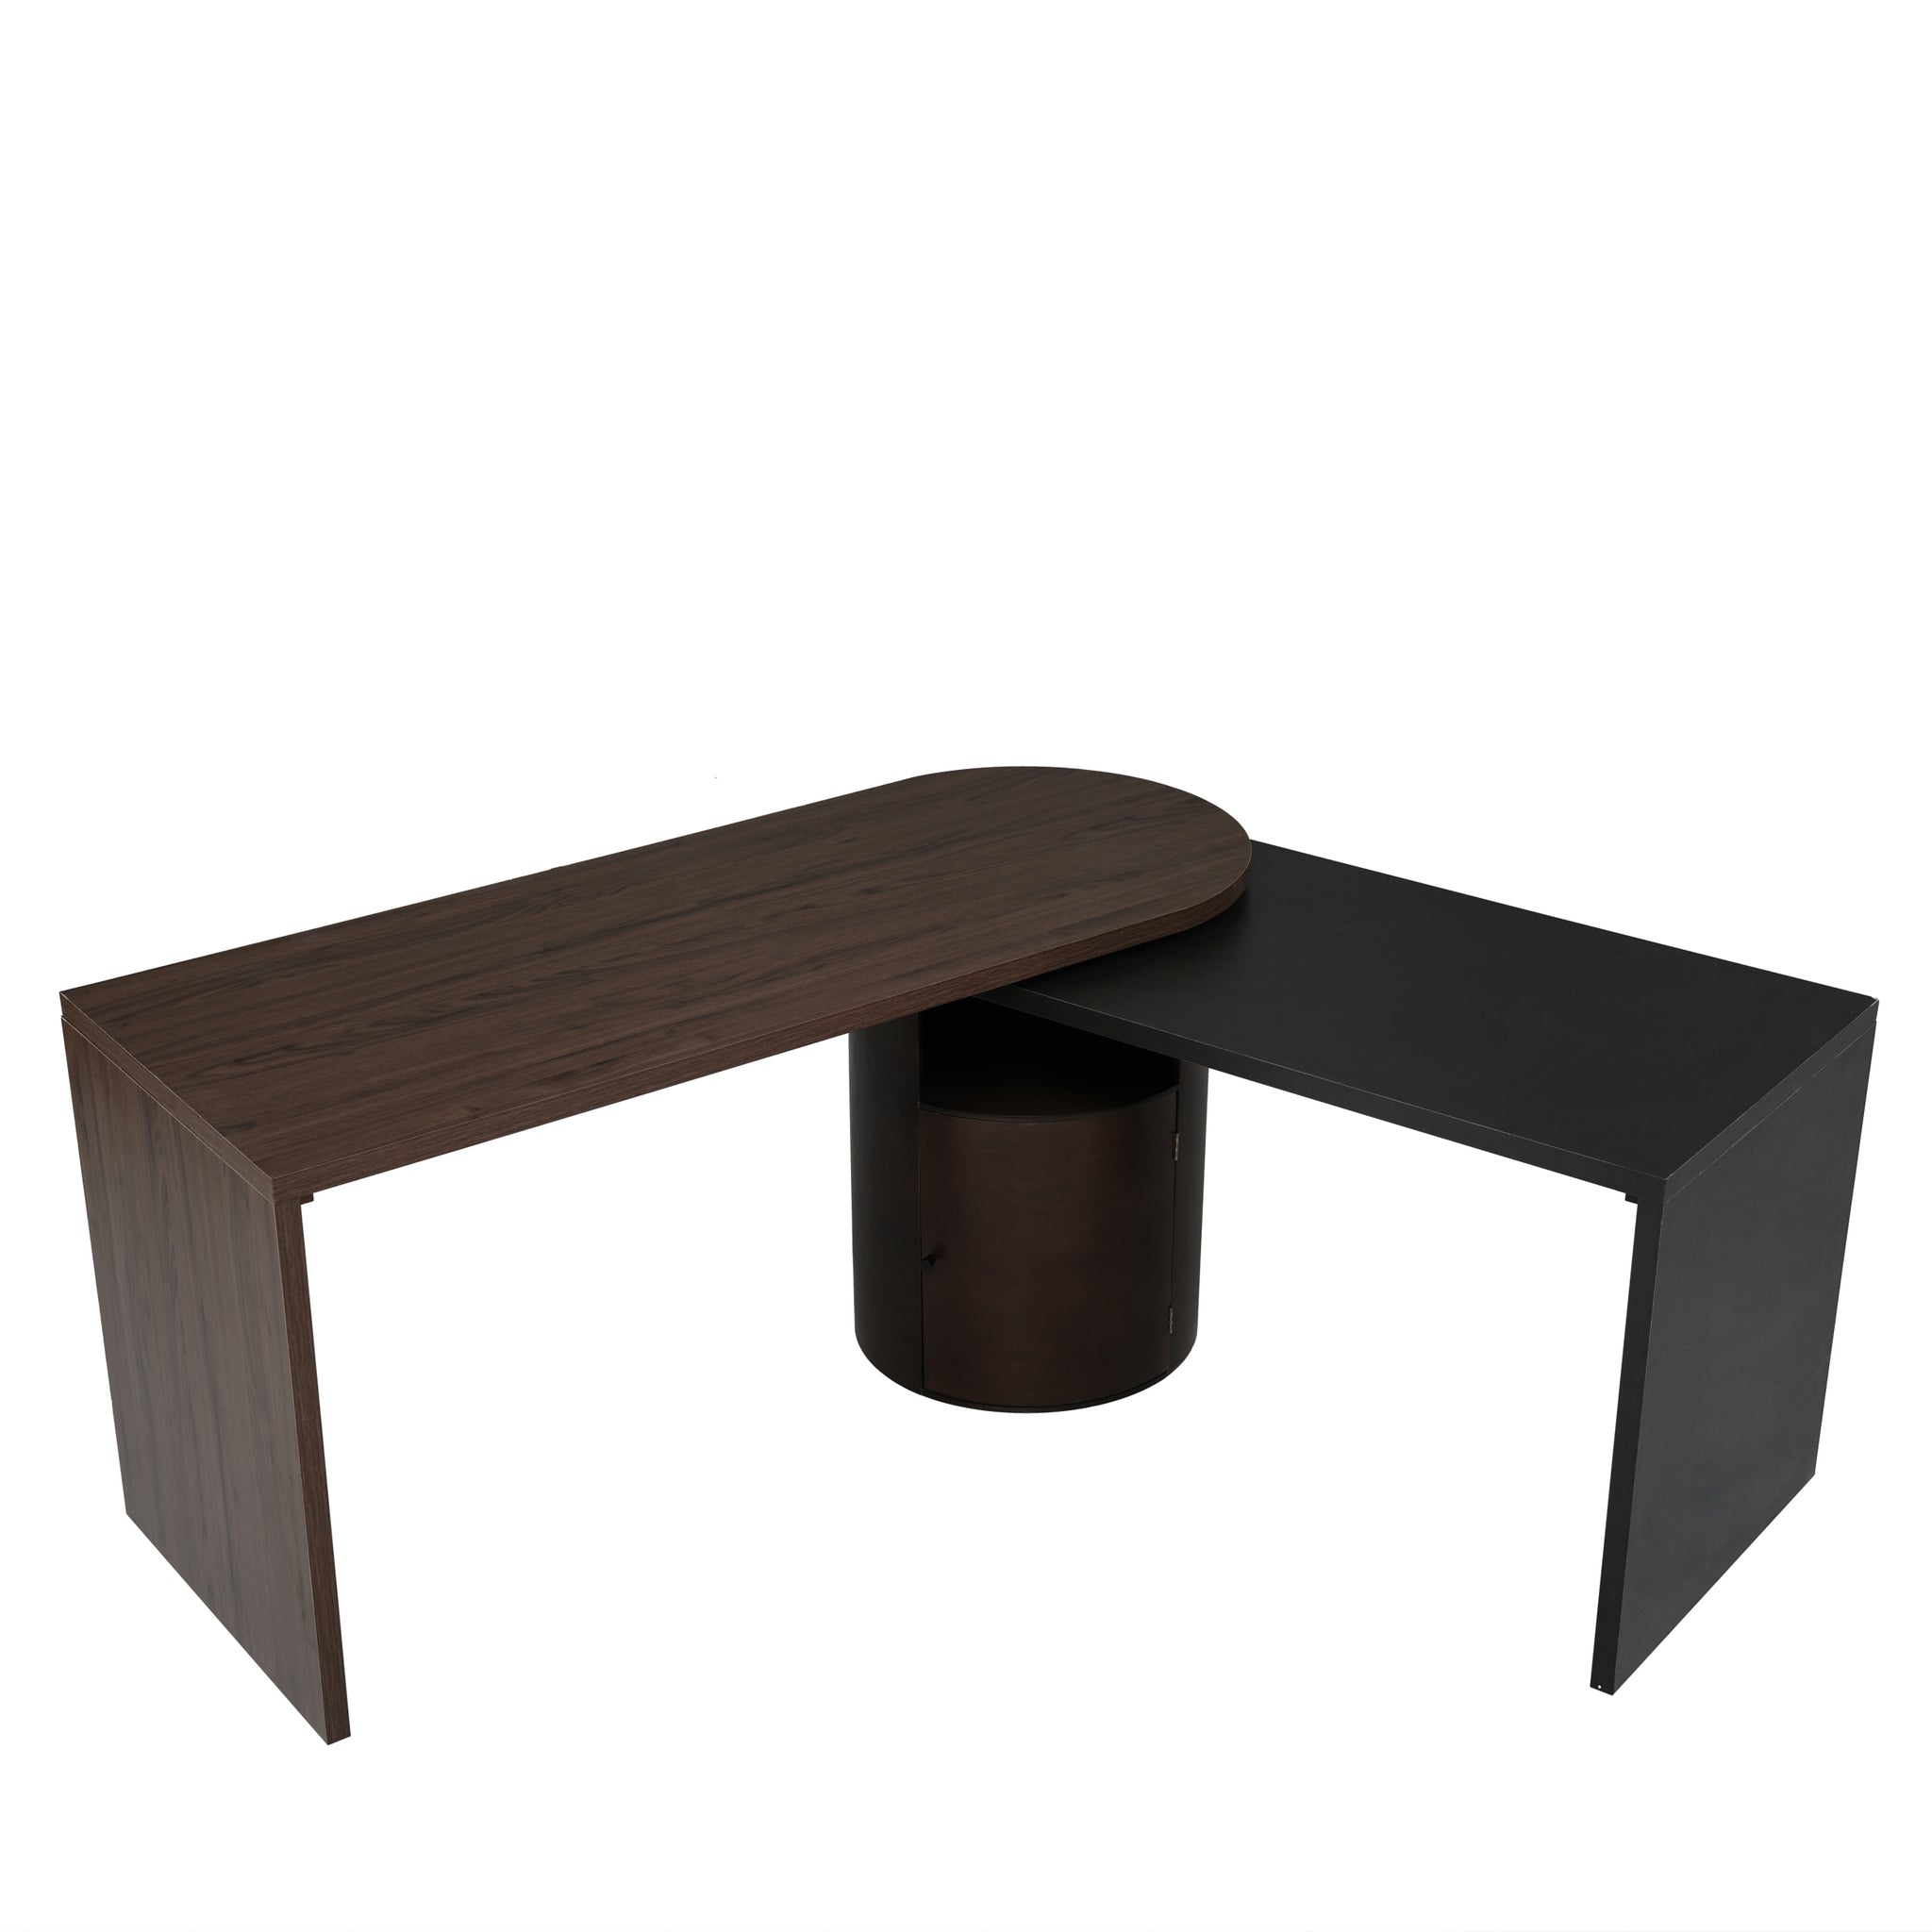 56.92" Modern L Shaped Desk in Walnut with 1